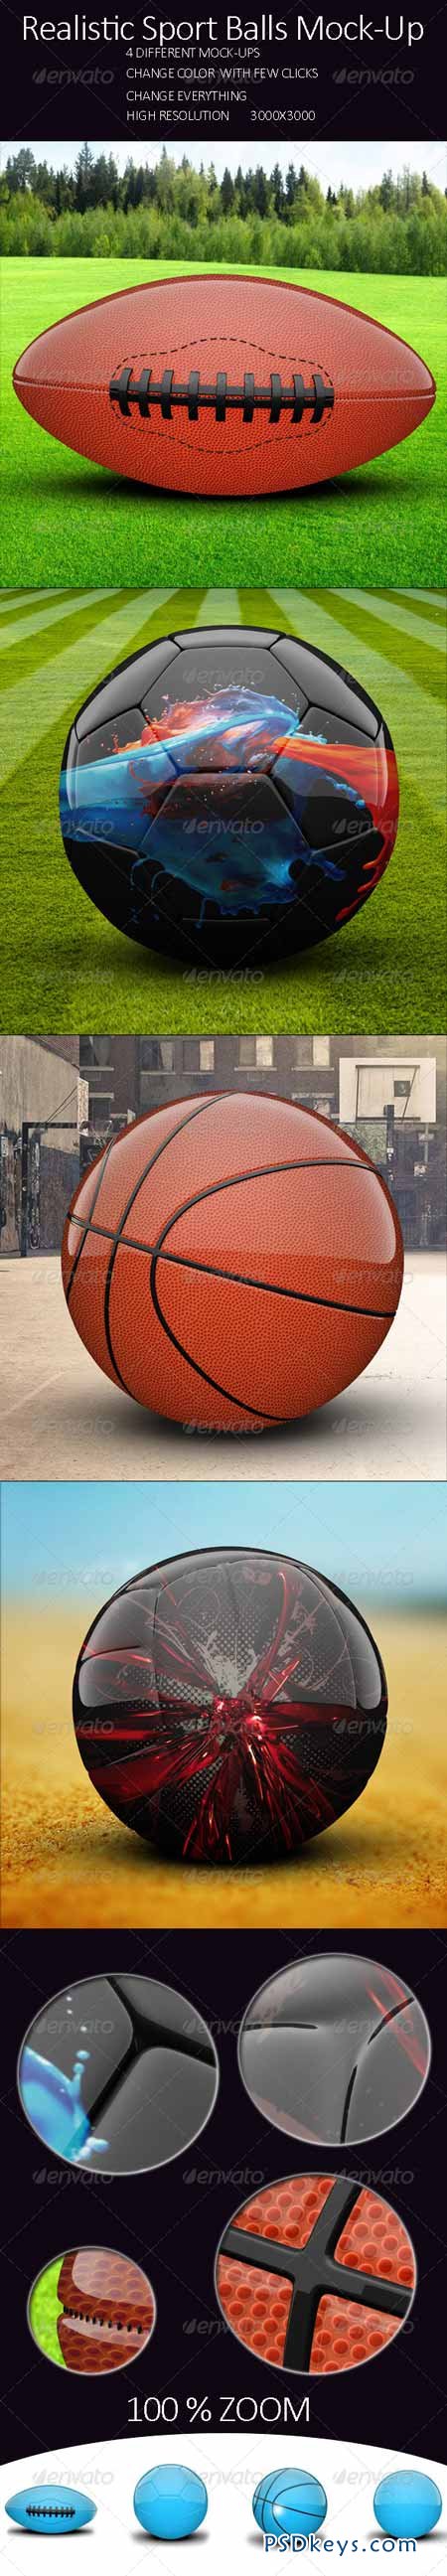 Realistic Sport Balls Mock Up 8006900